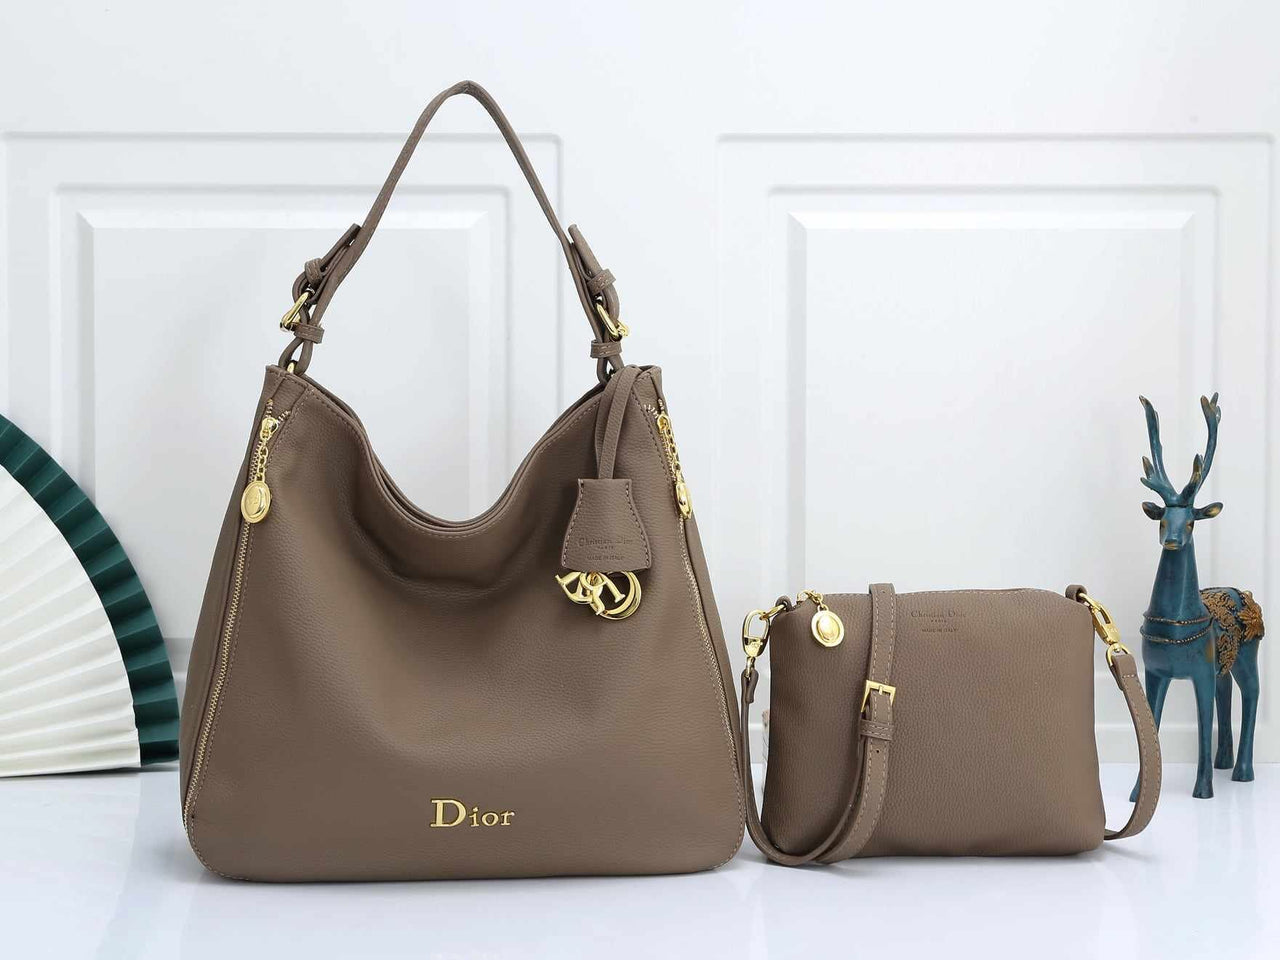 D788 Leather Hobo Shoulder Bag and Sling Bag Set